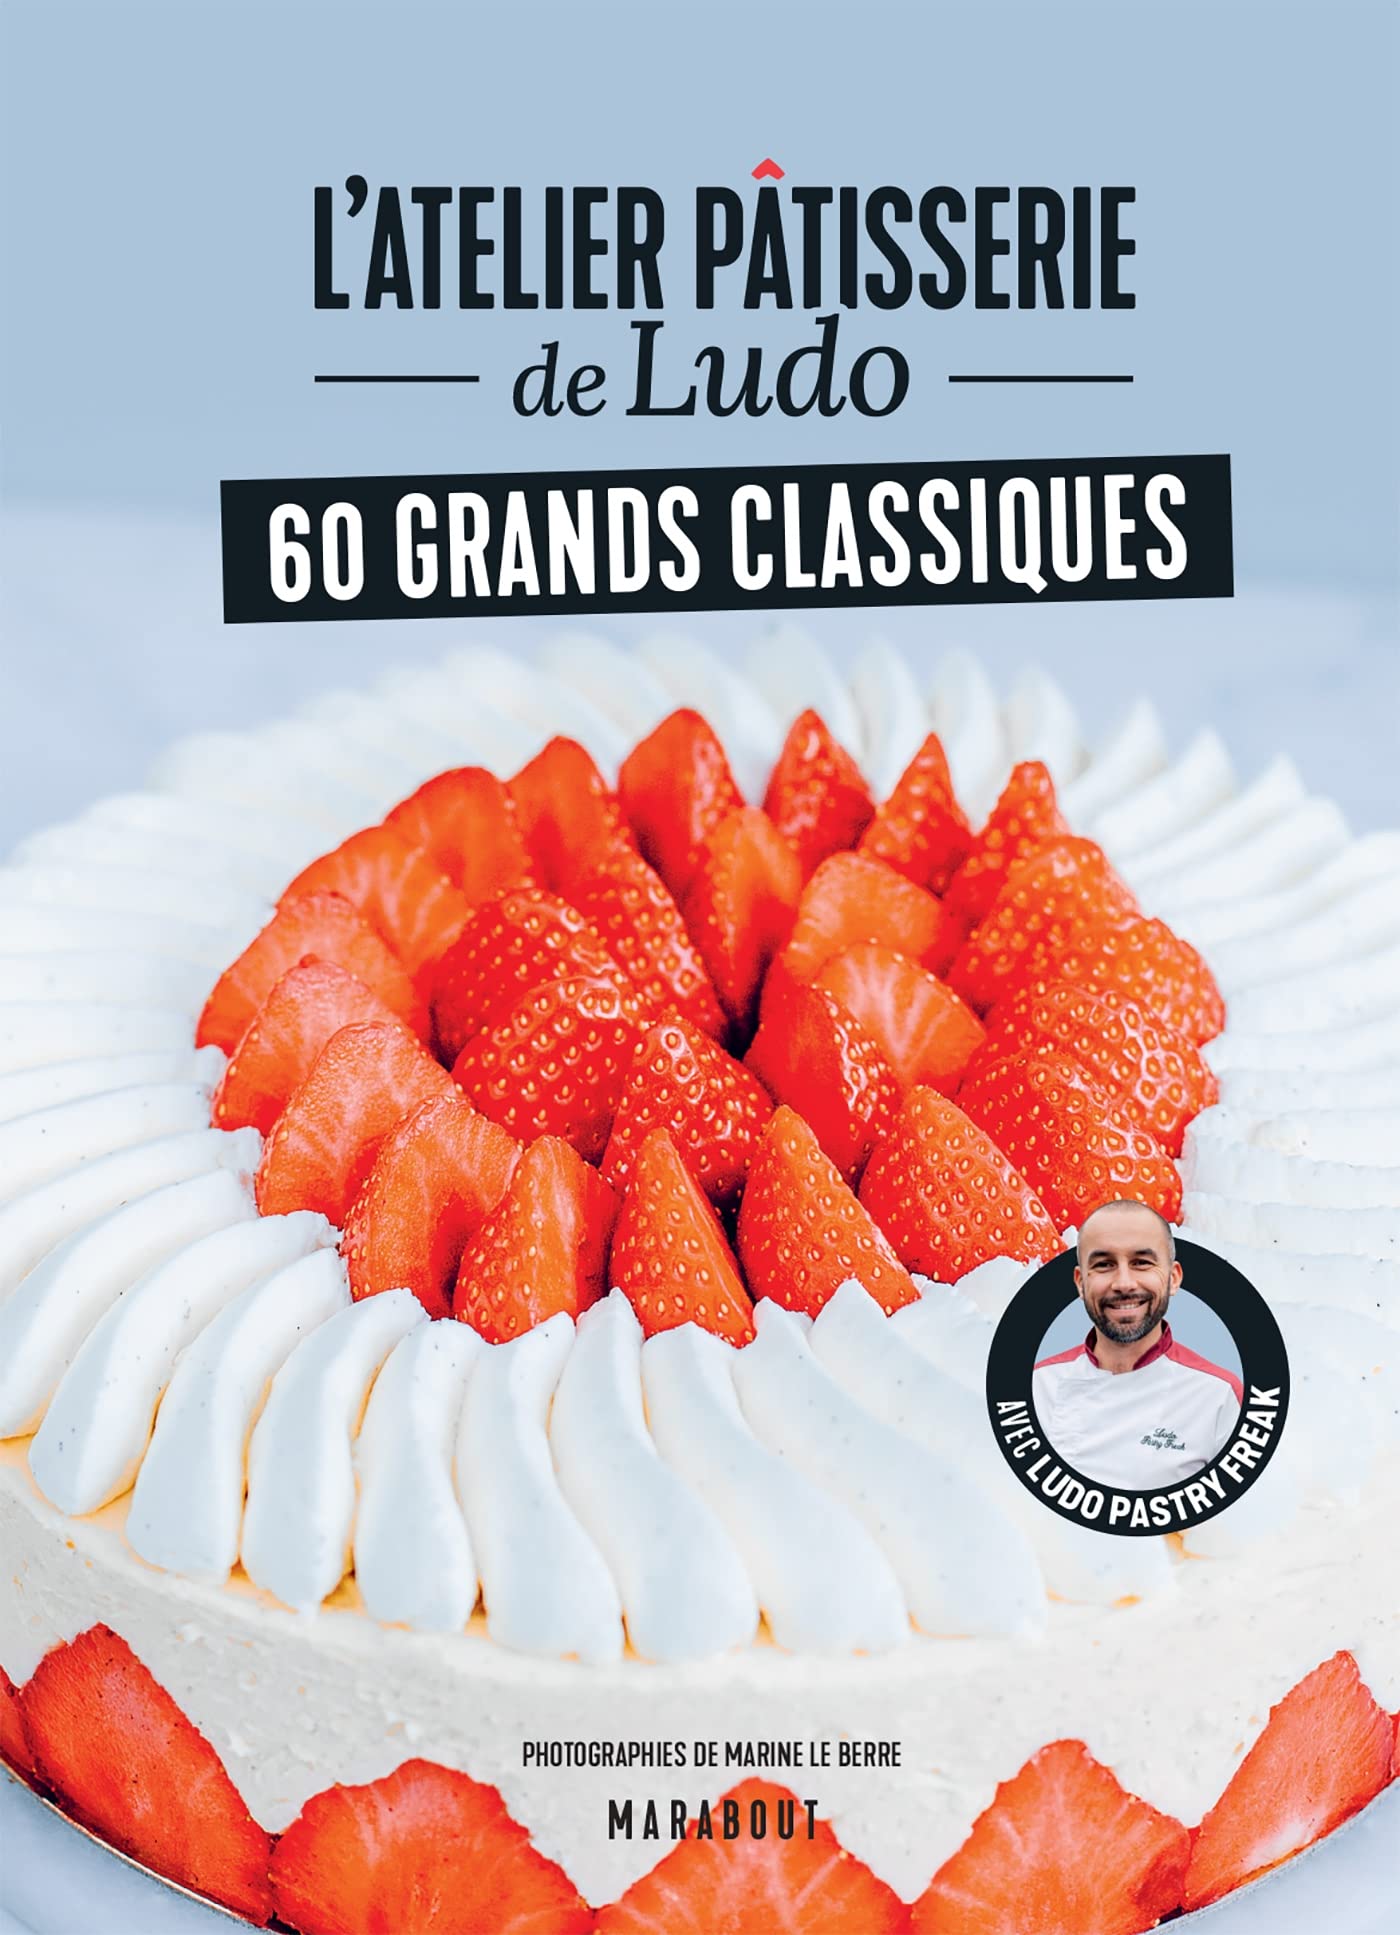 Latelier patisserie de Ludo - 60 grands classiques (Paperback)